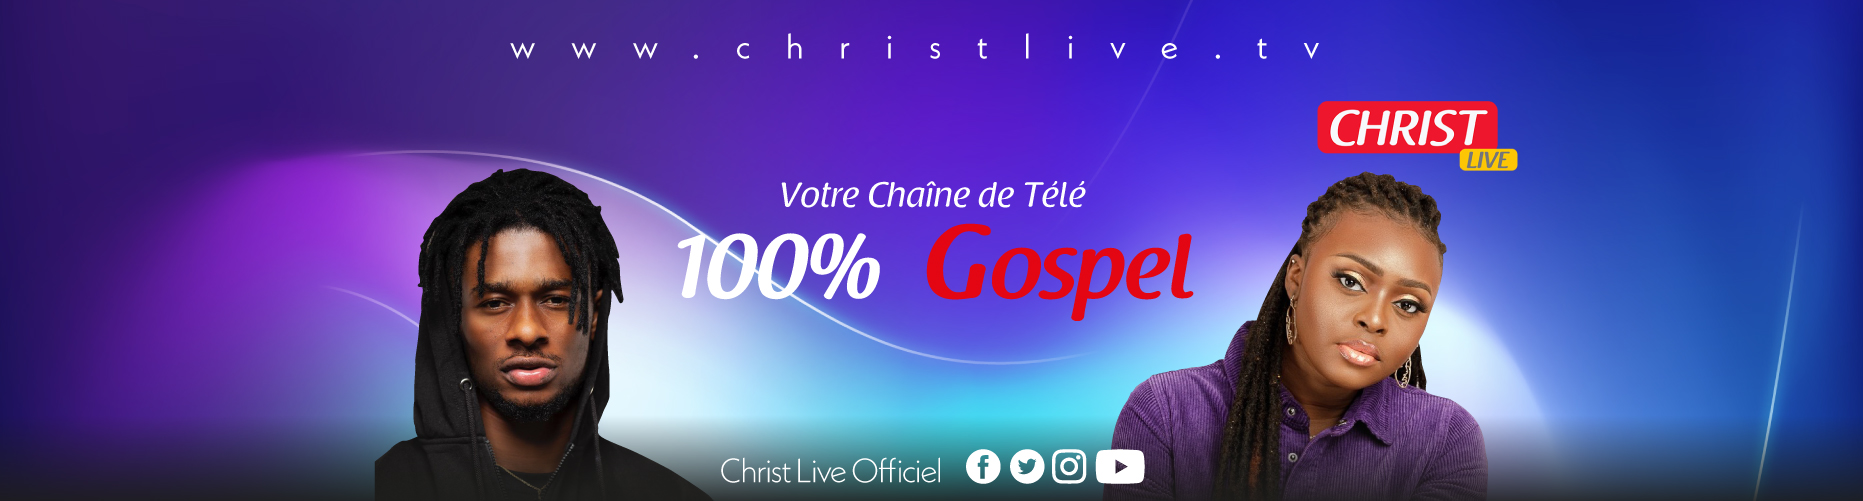 CHRIST LIVE 100% GOSPEL